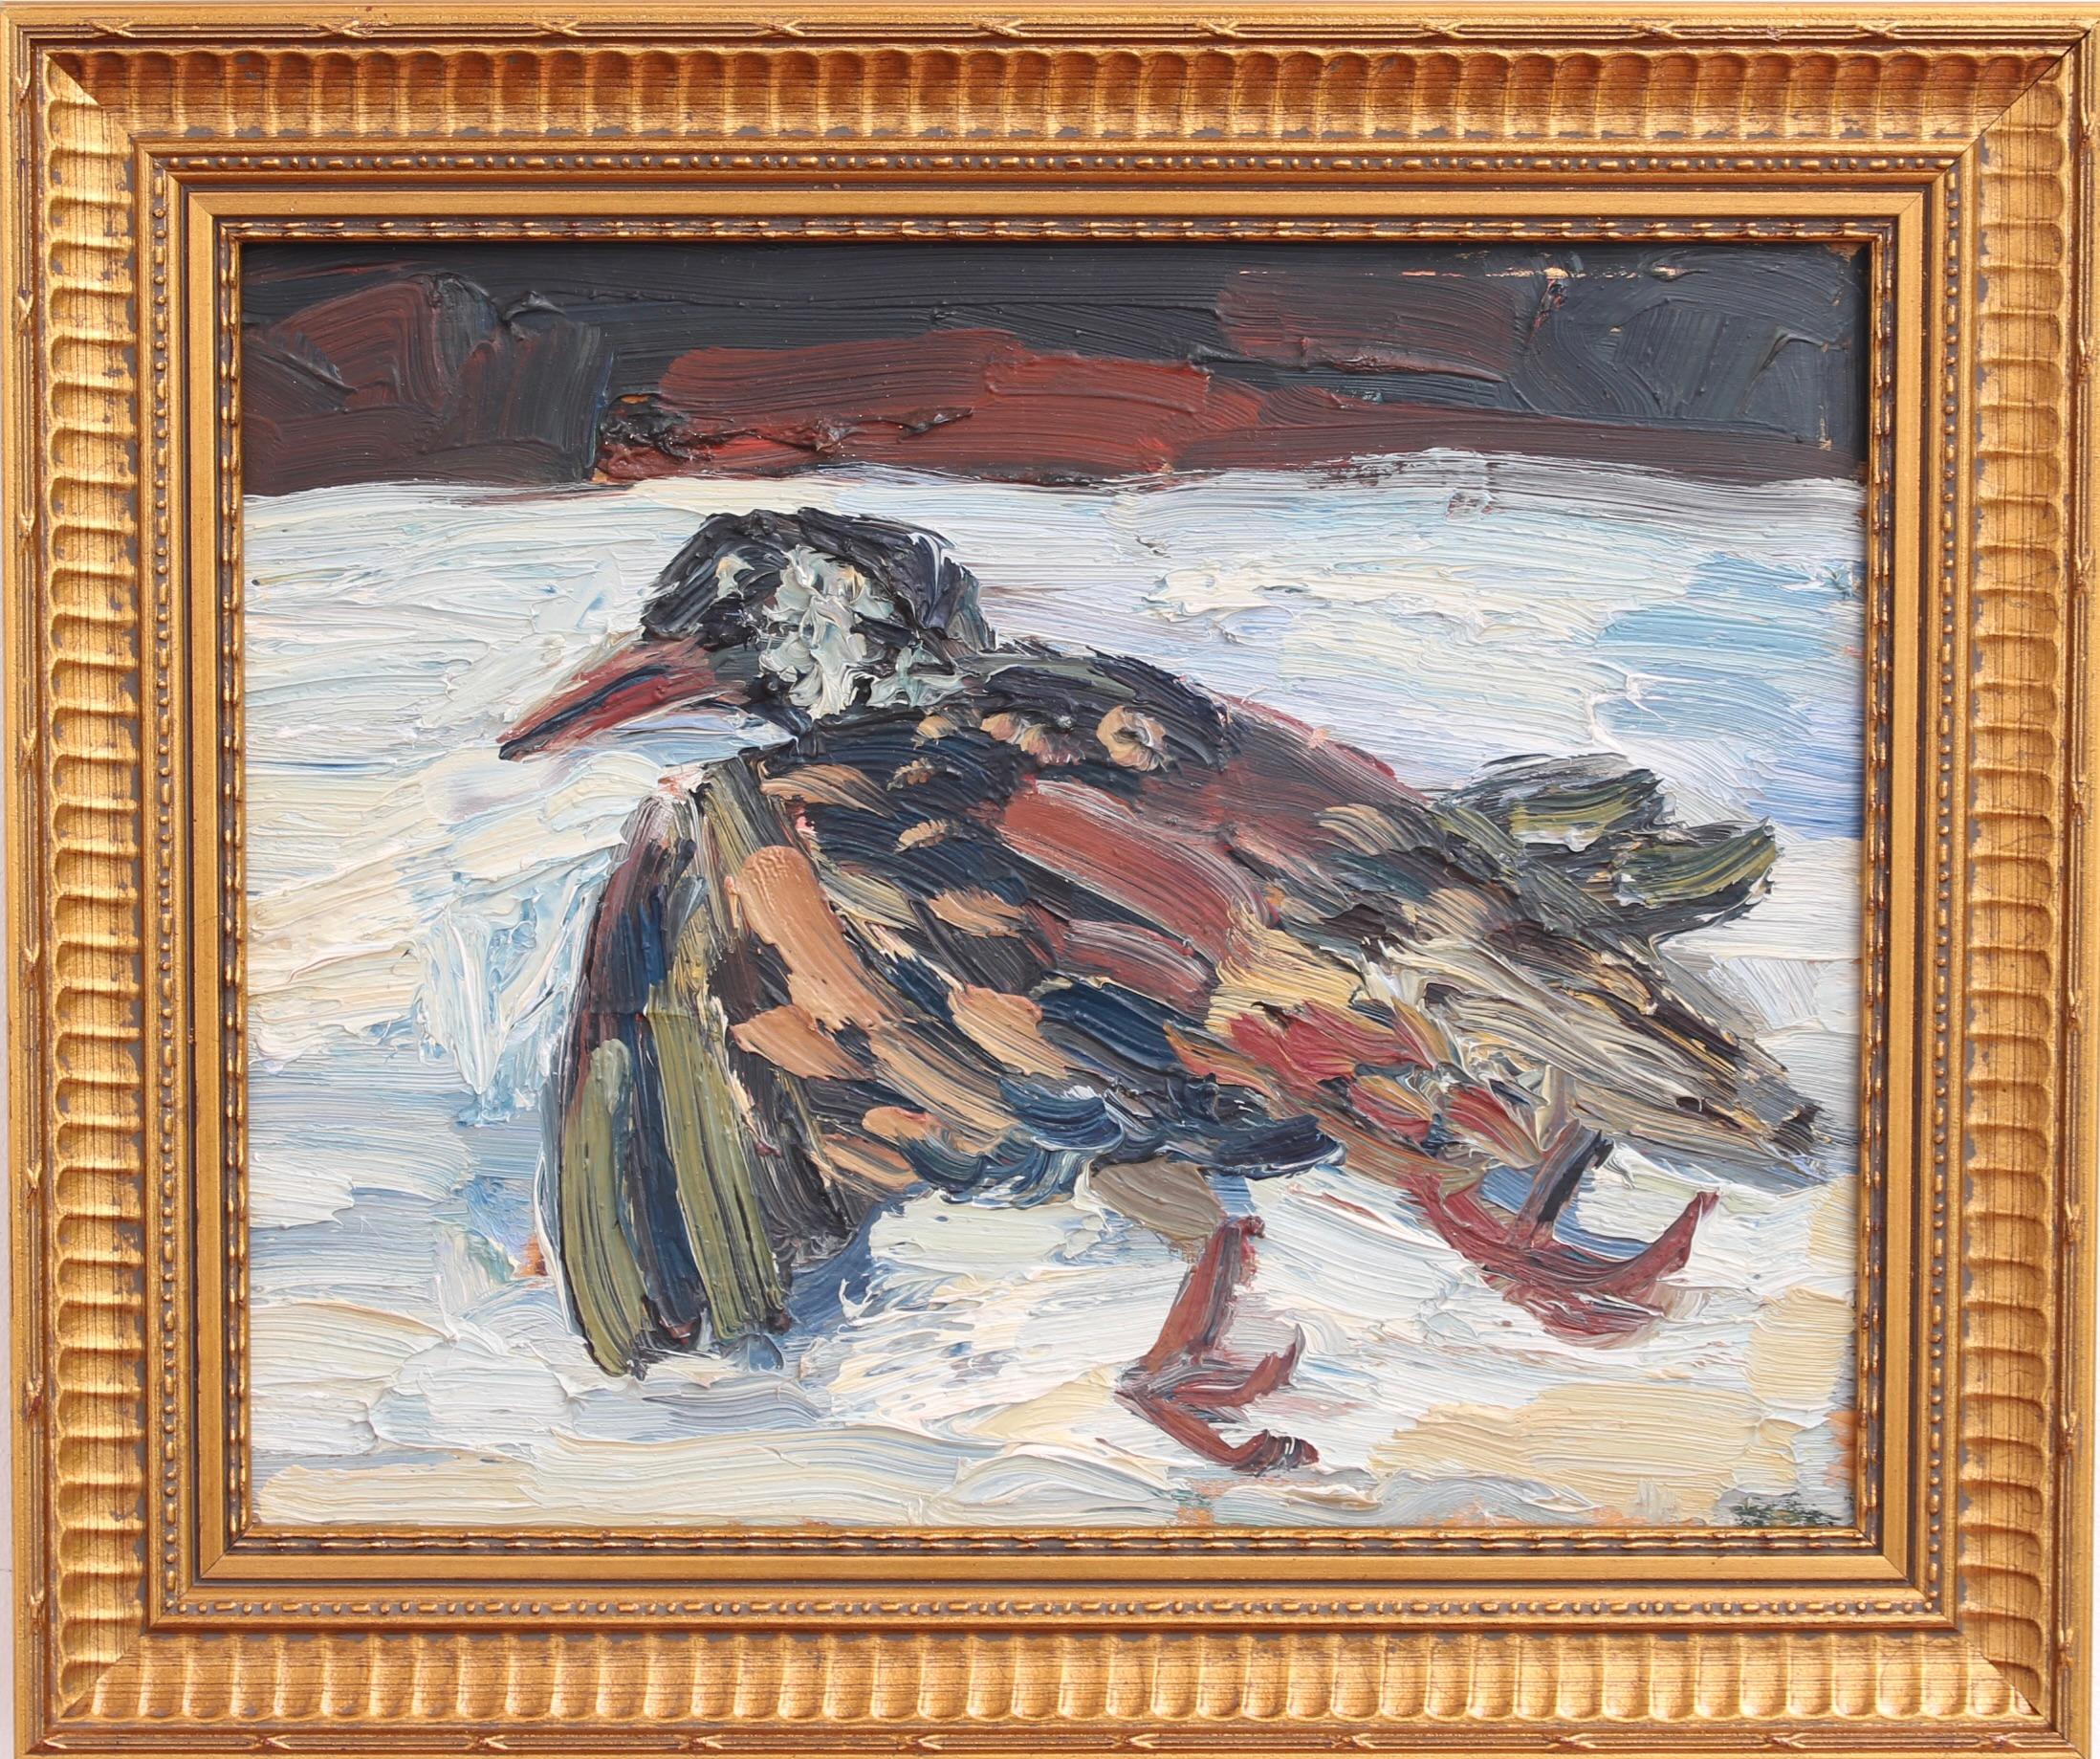 Portrait d'un oiseau dans la neige, huile sur carton, par Anna Costa (vers les années 1960). Il s'agit d'une nature morte unique peinte par l'artiste dans des couleurs chaudes dans un style impressionniste. Dans les cultures anciennes comme la